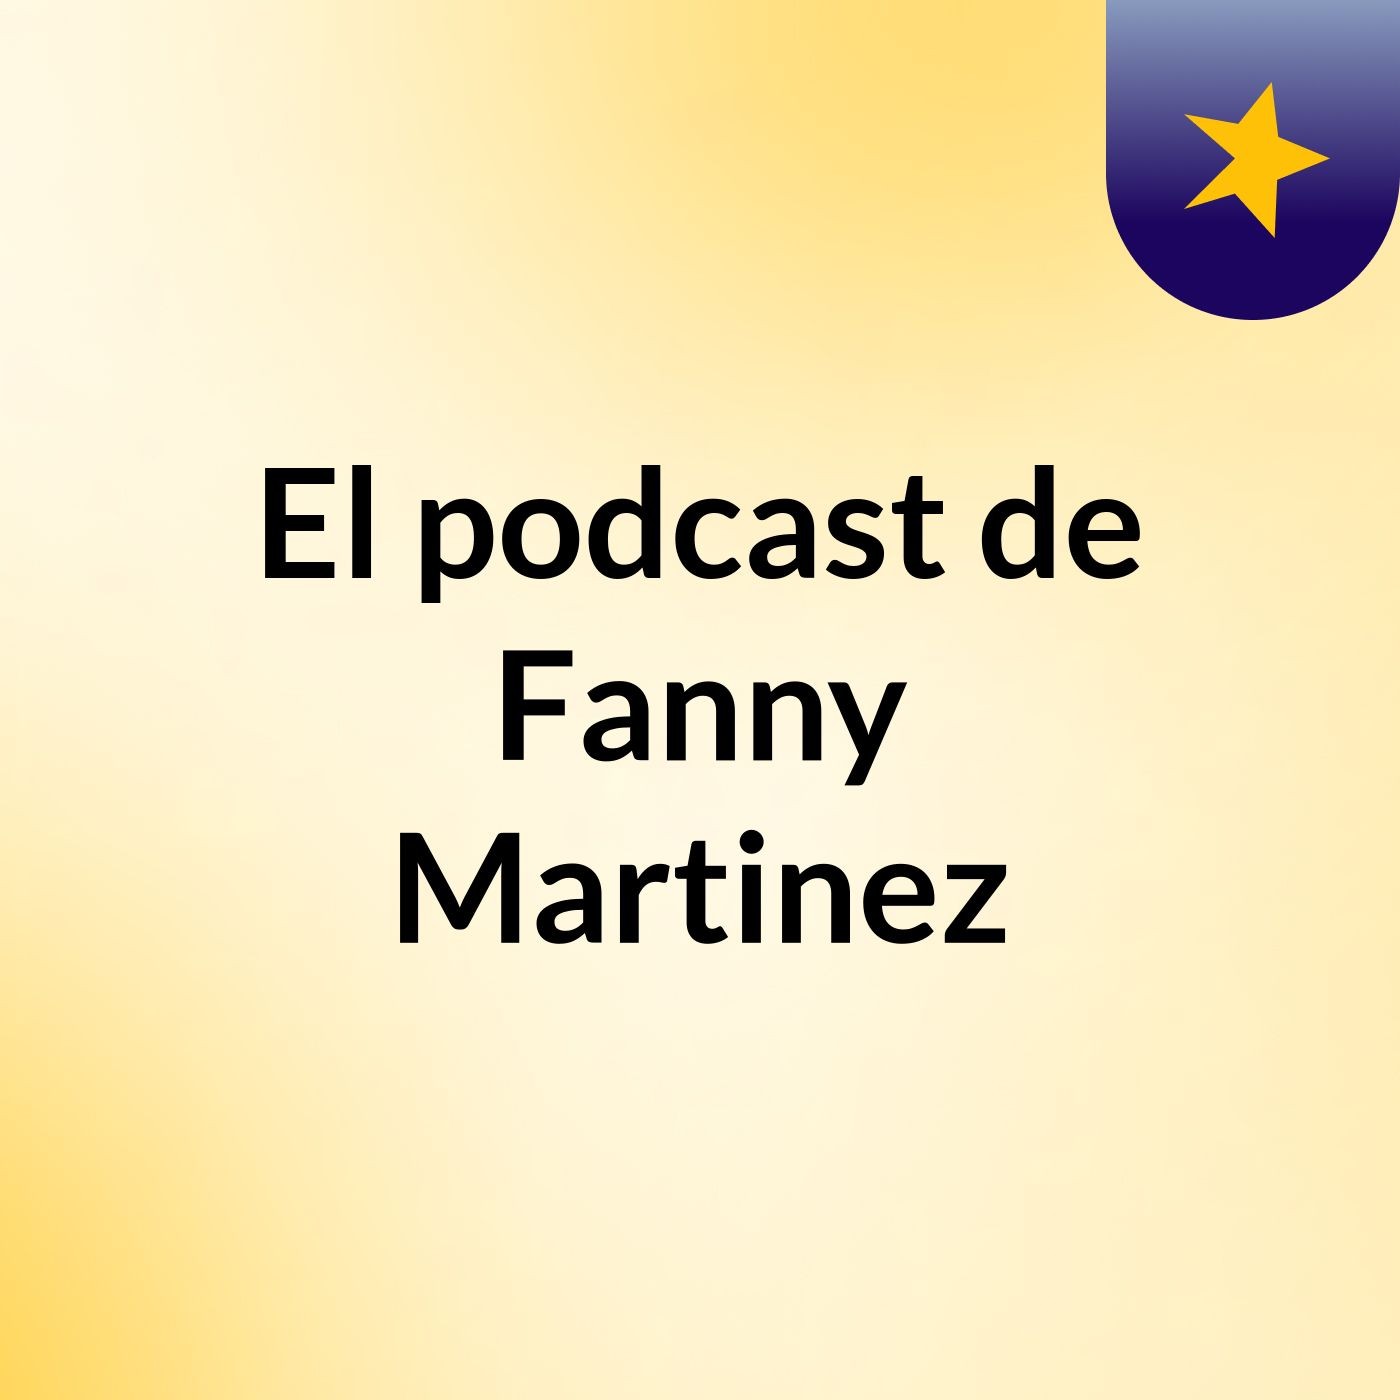 El podcast de Fanny Martinez